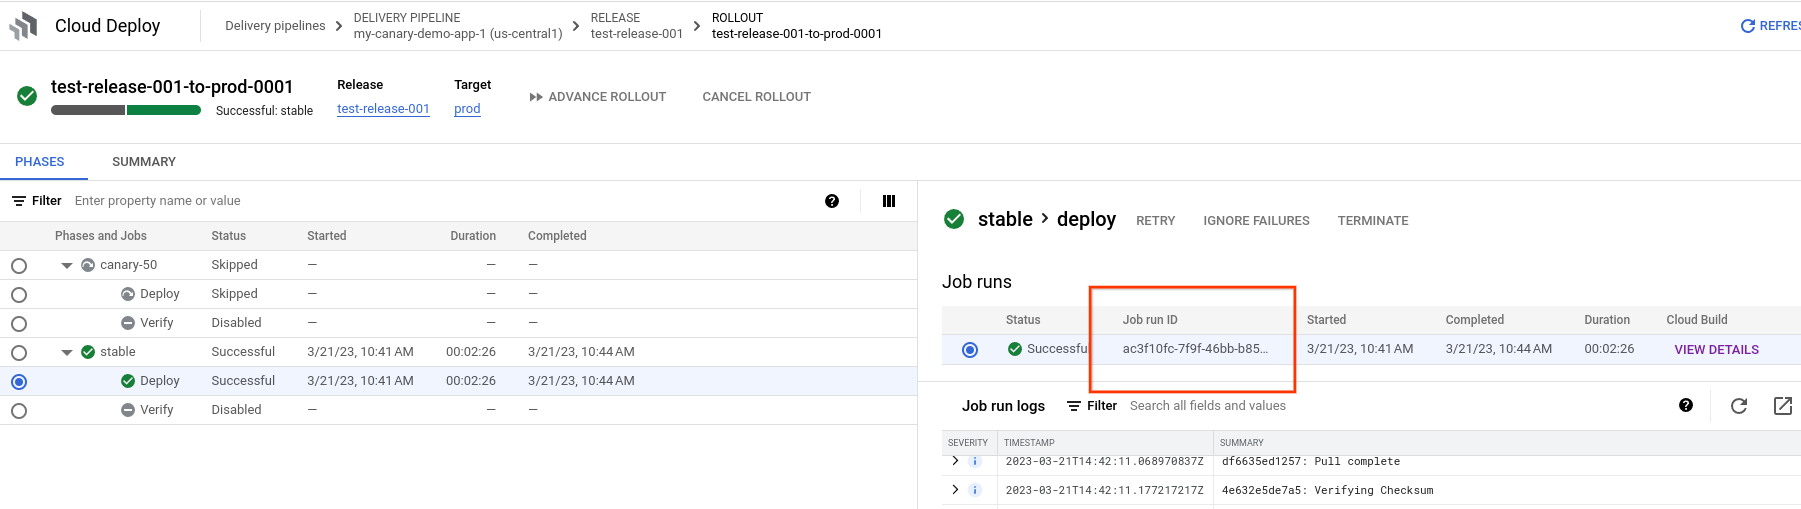 ID de execução do job nos detalhes do lançamento no console do Google Cloud 